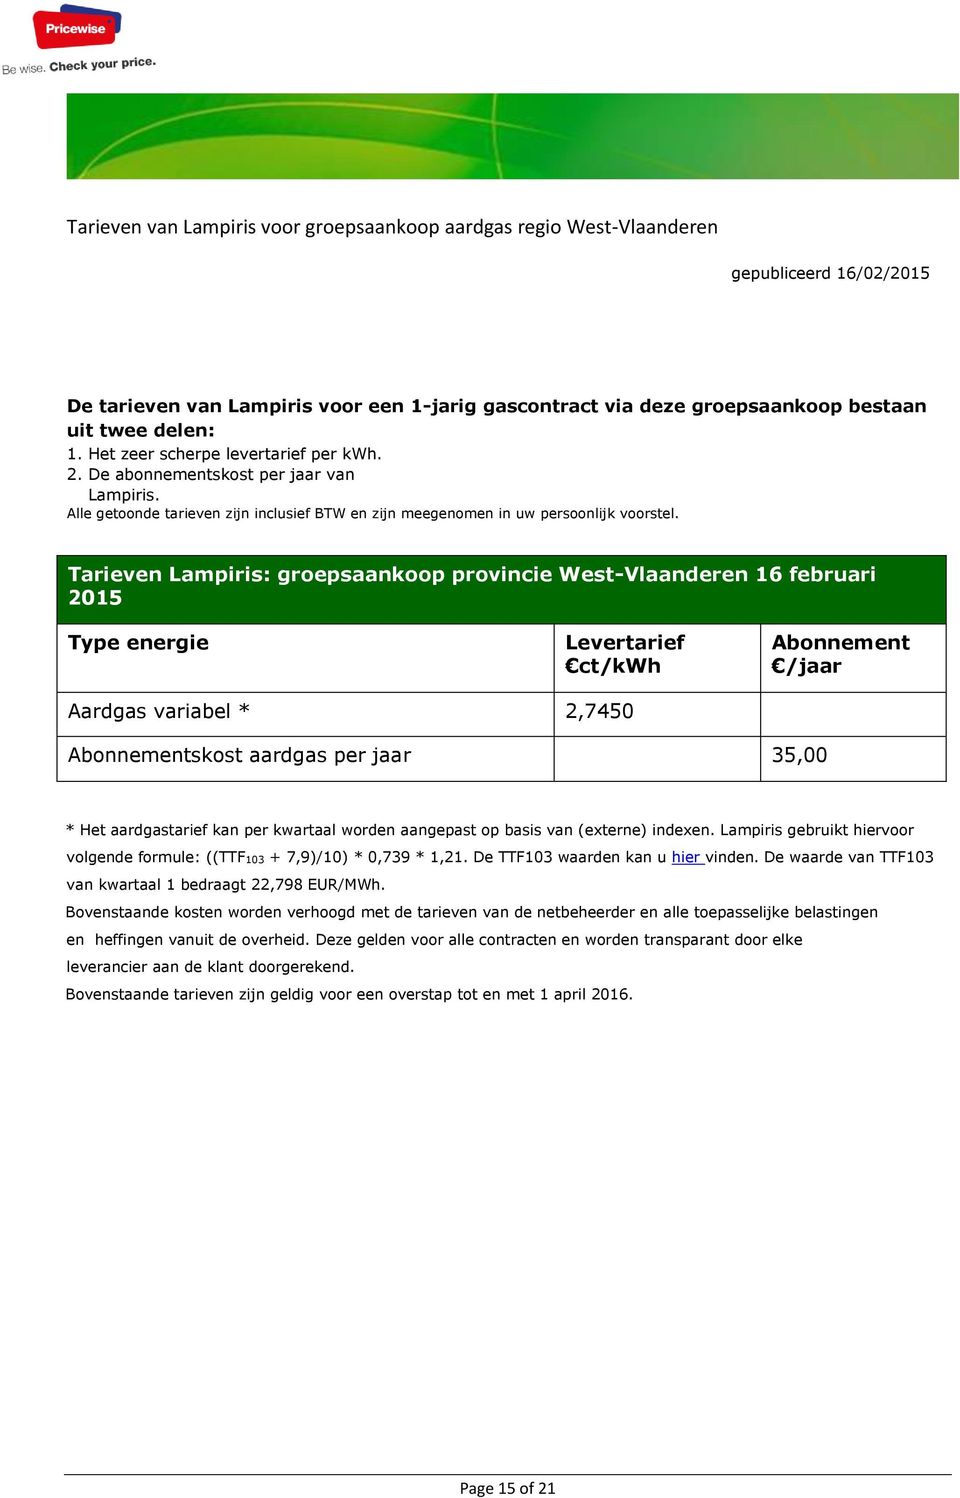 Tarieven Lampiris: groepsaankoop provincie West-Vlaanderen 16 februari 2015 Type energie Levertarief ct/kwh Abonnement /jaar Aardgas variabel * 2,7450 Abonnementskost aardgas per jaar 35,00 * Het